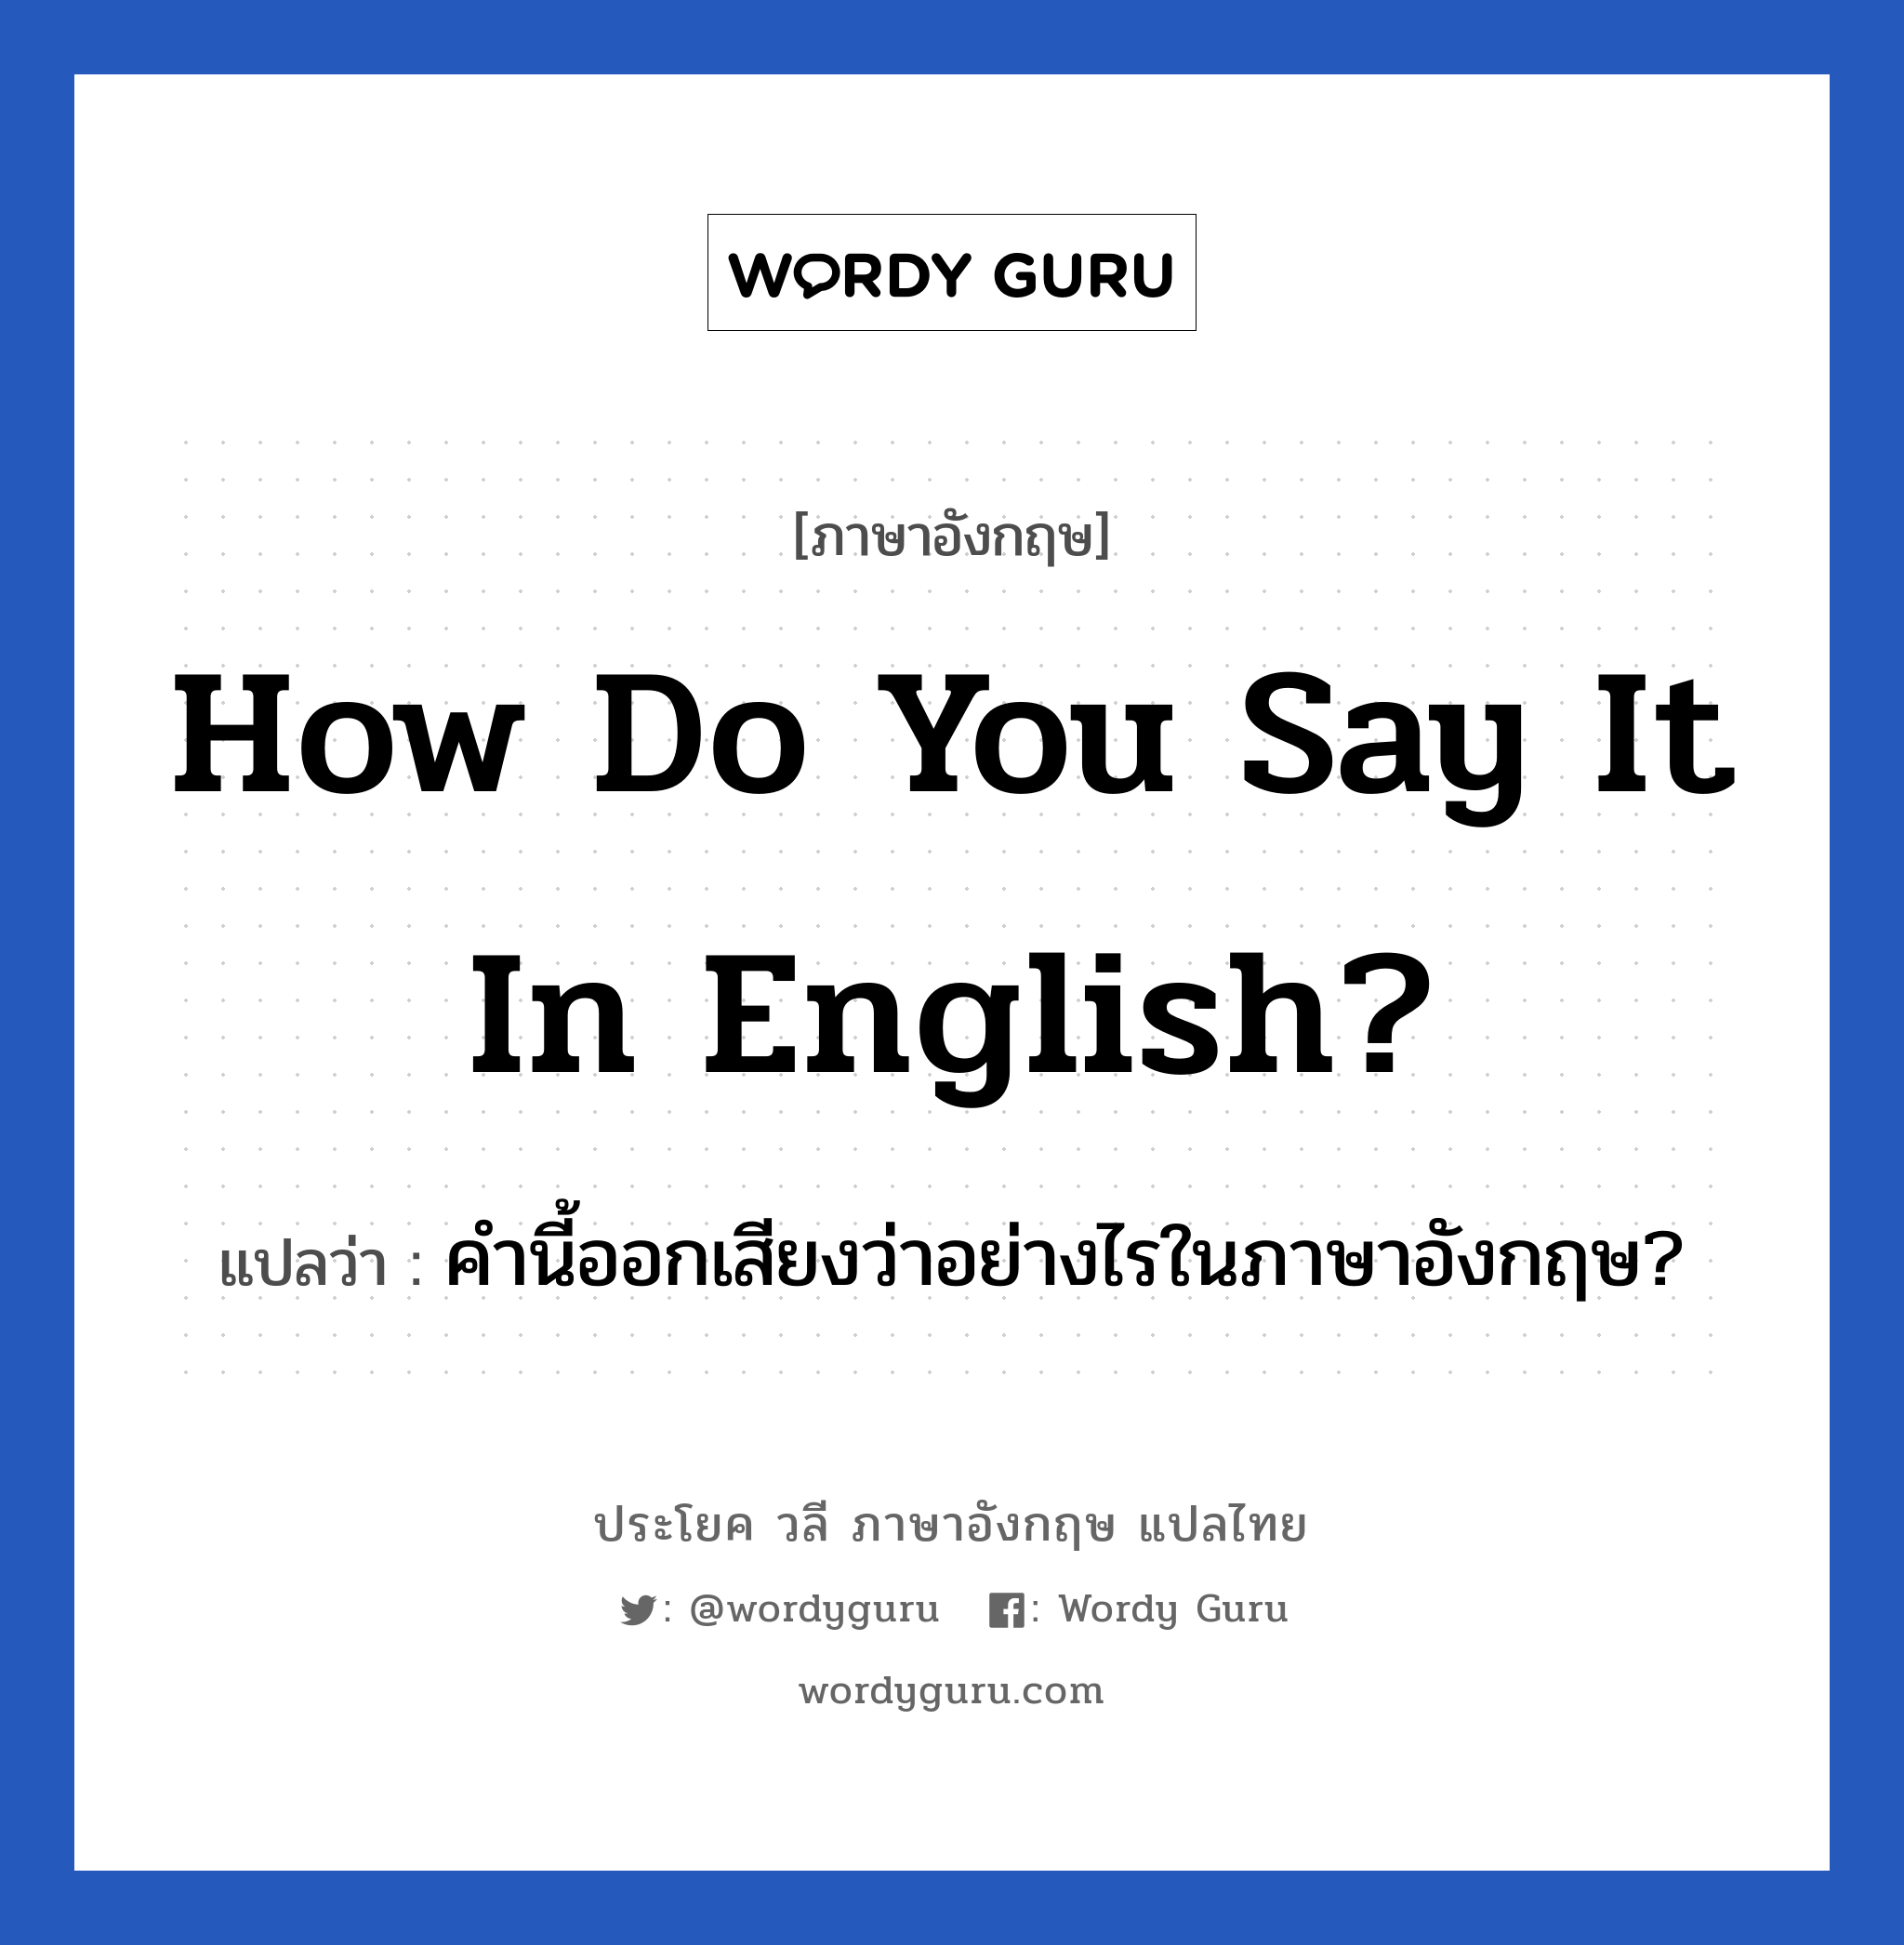 คำนี้ออกเสียงว่าอย่างไรในภาษาอังกฤษ? ภาษาอังกฤษ?, วลีภาษาอังกฤษ คำนี้ออกเสียงว่าอย่างไรในภาษาอังกฤษ? แปลว่า How do you say it in English?